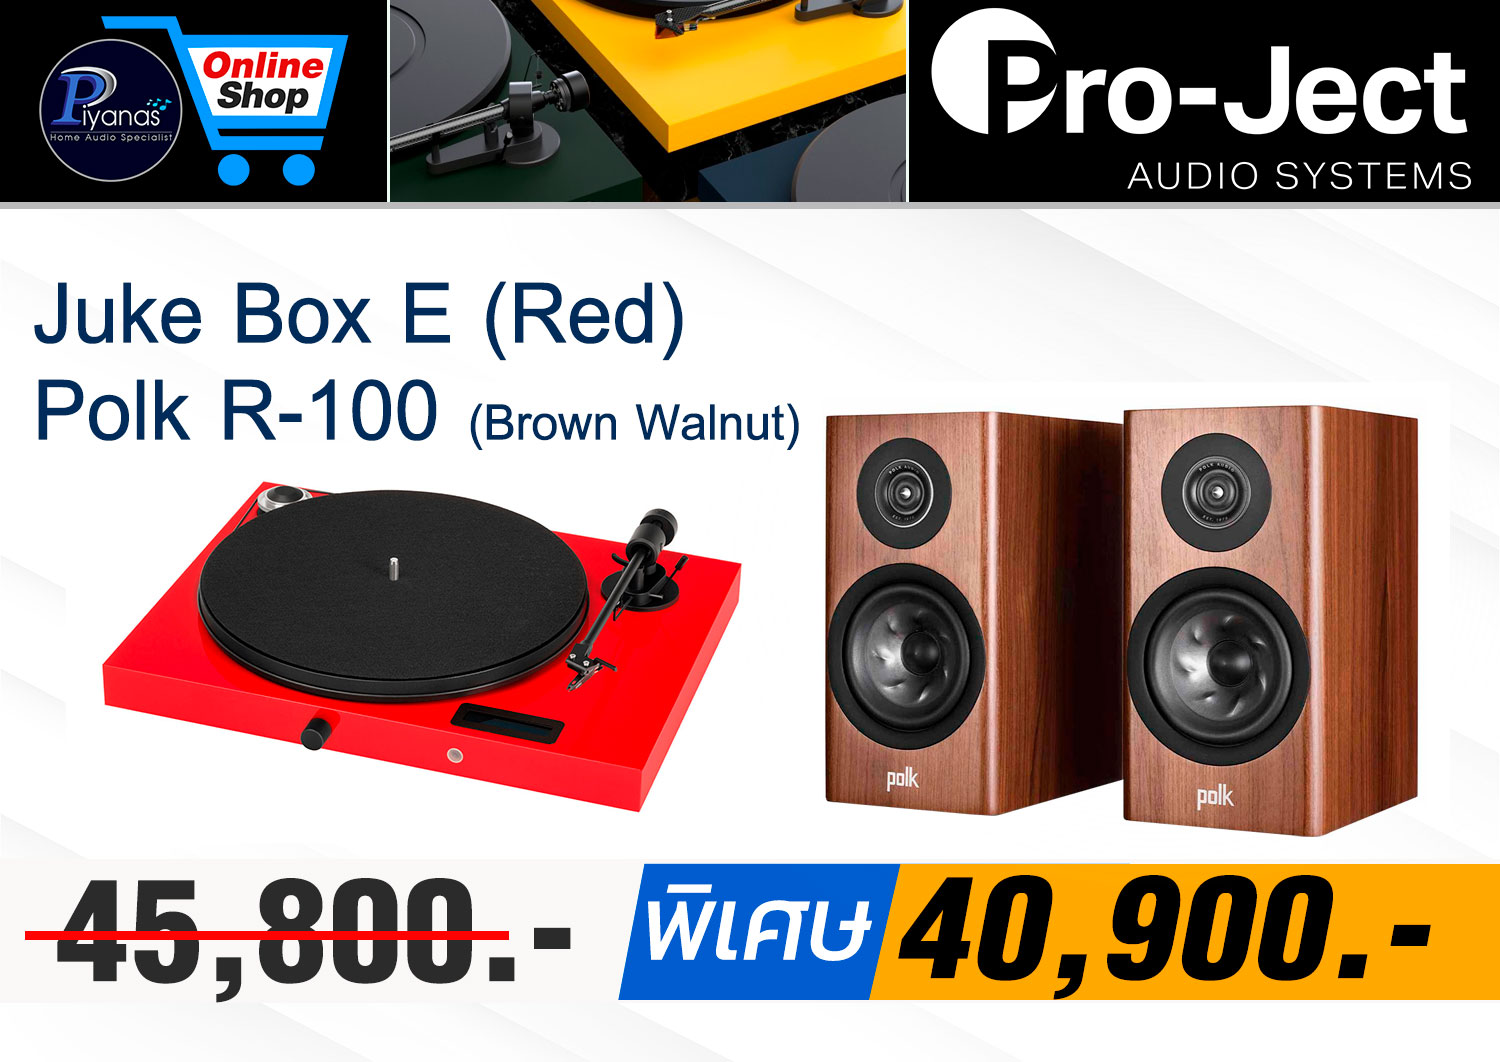 Juke Box E (Red)
+ Polk R-100